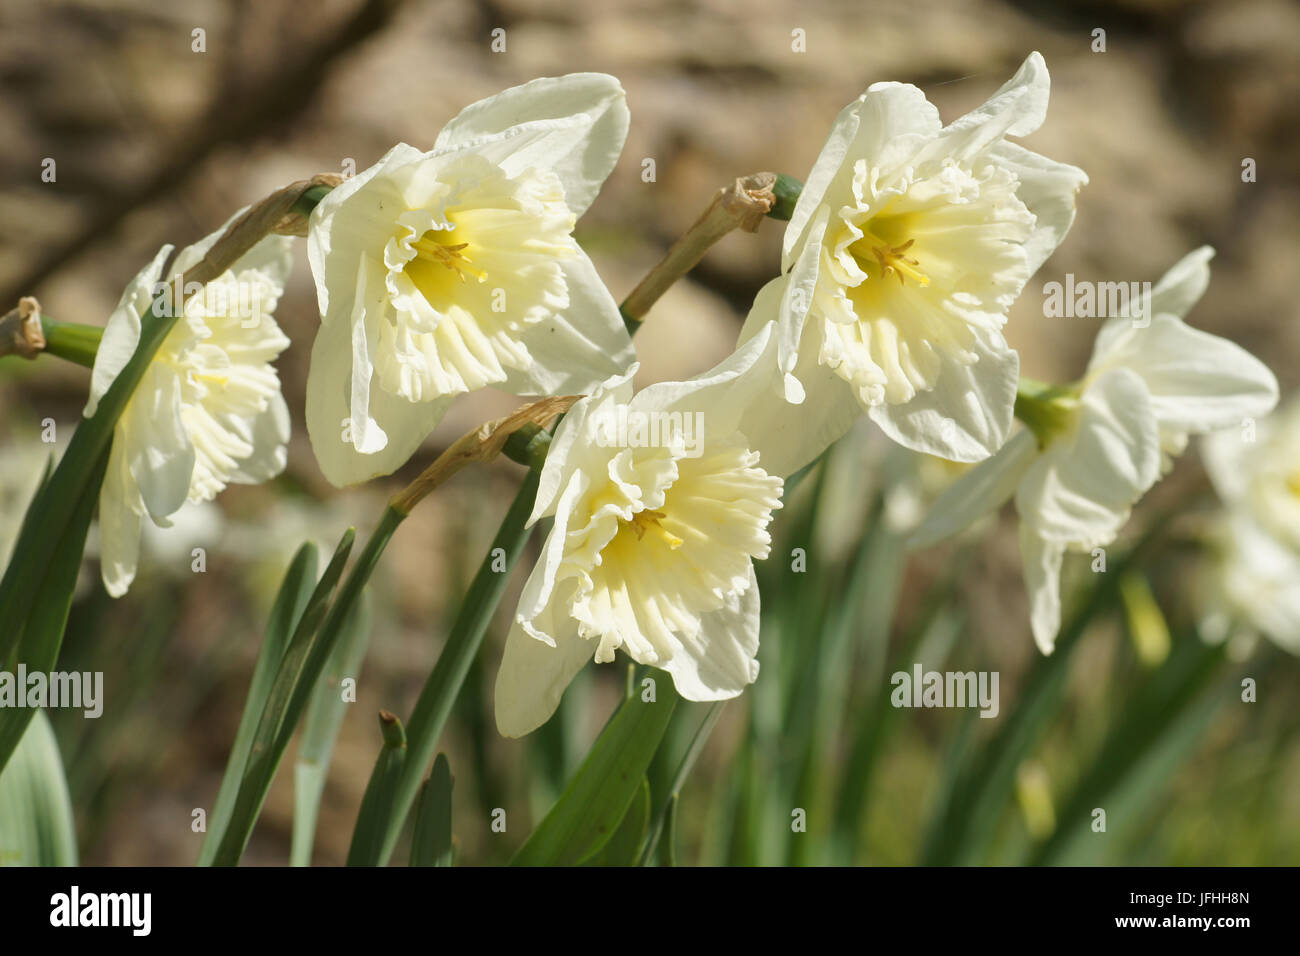 Narcissus x incomparabilis, Nonesuch Daffodil Stock Photo